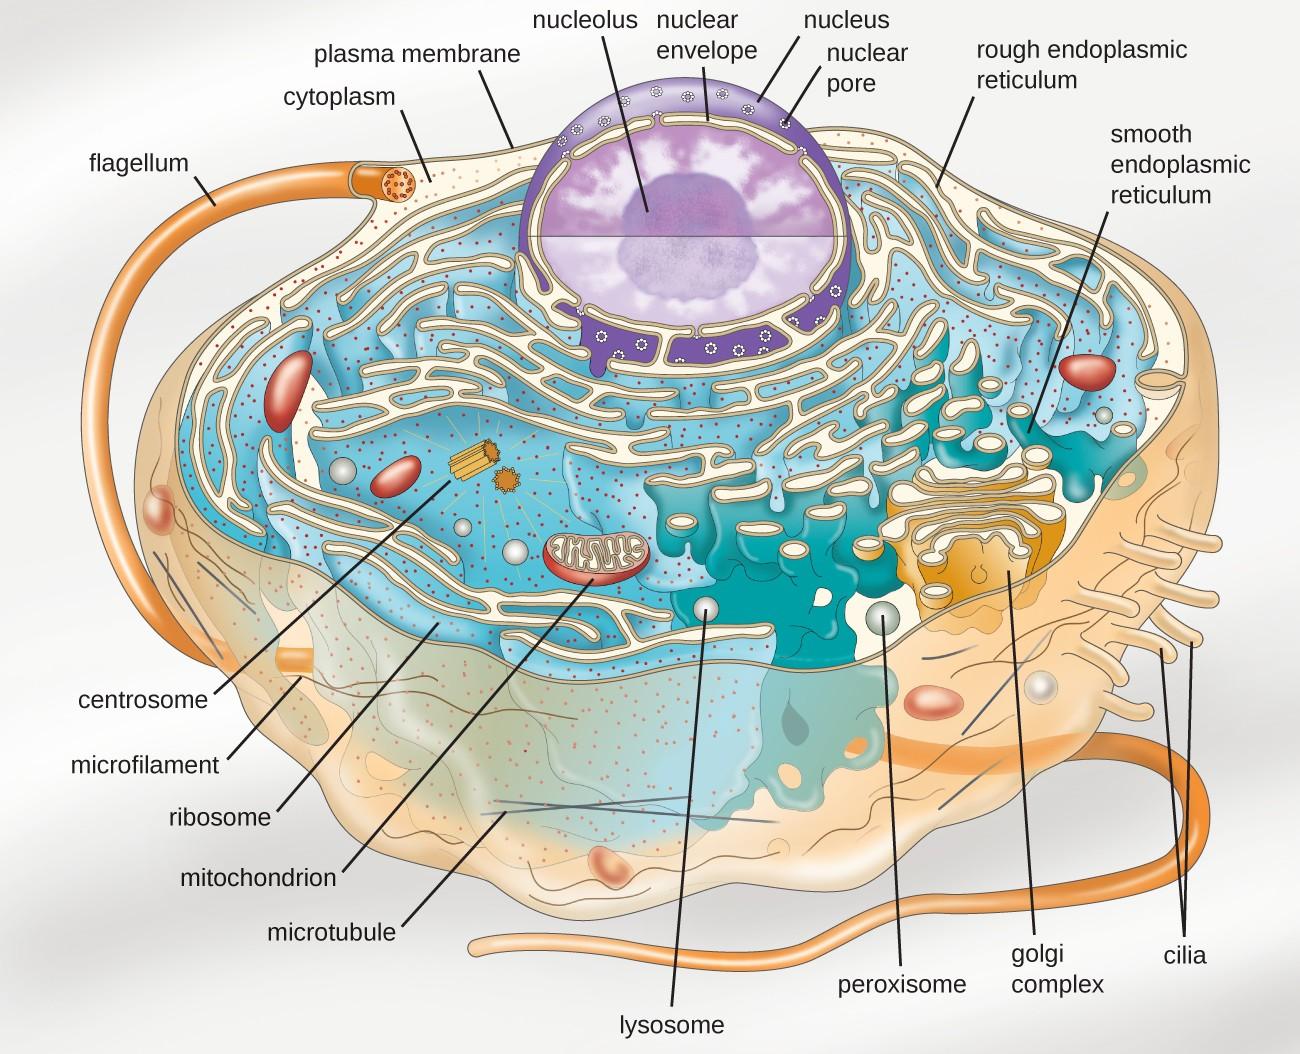 内质网膜图片